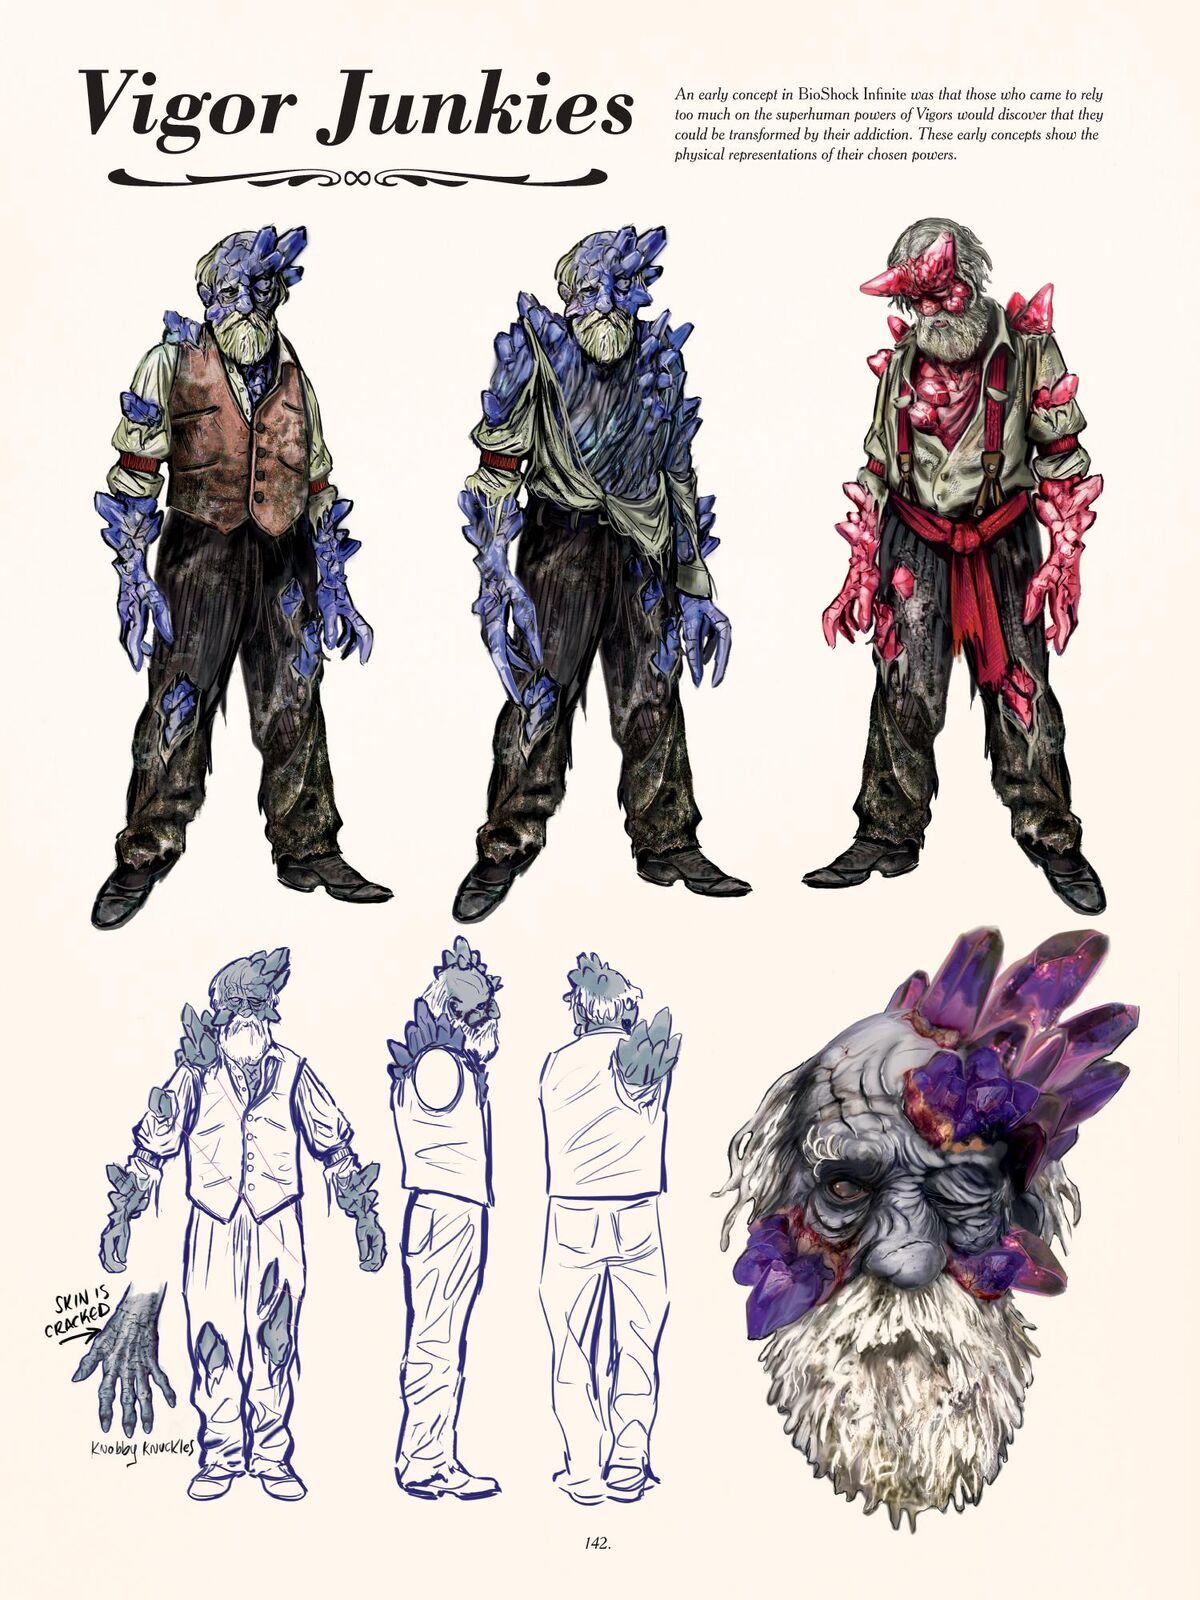 BioShock Infinite Concept Art & Characters